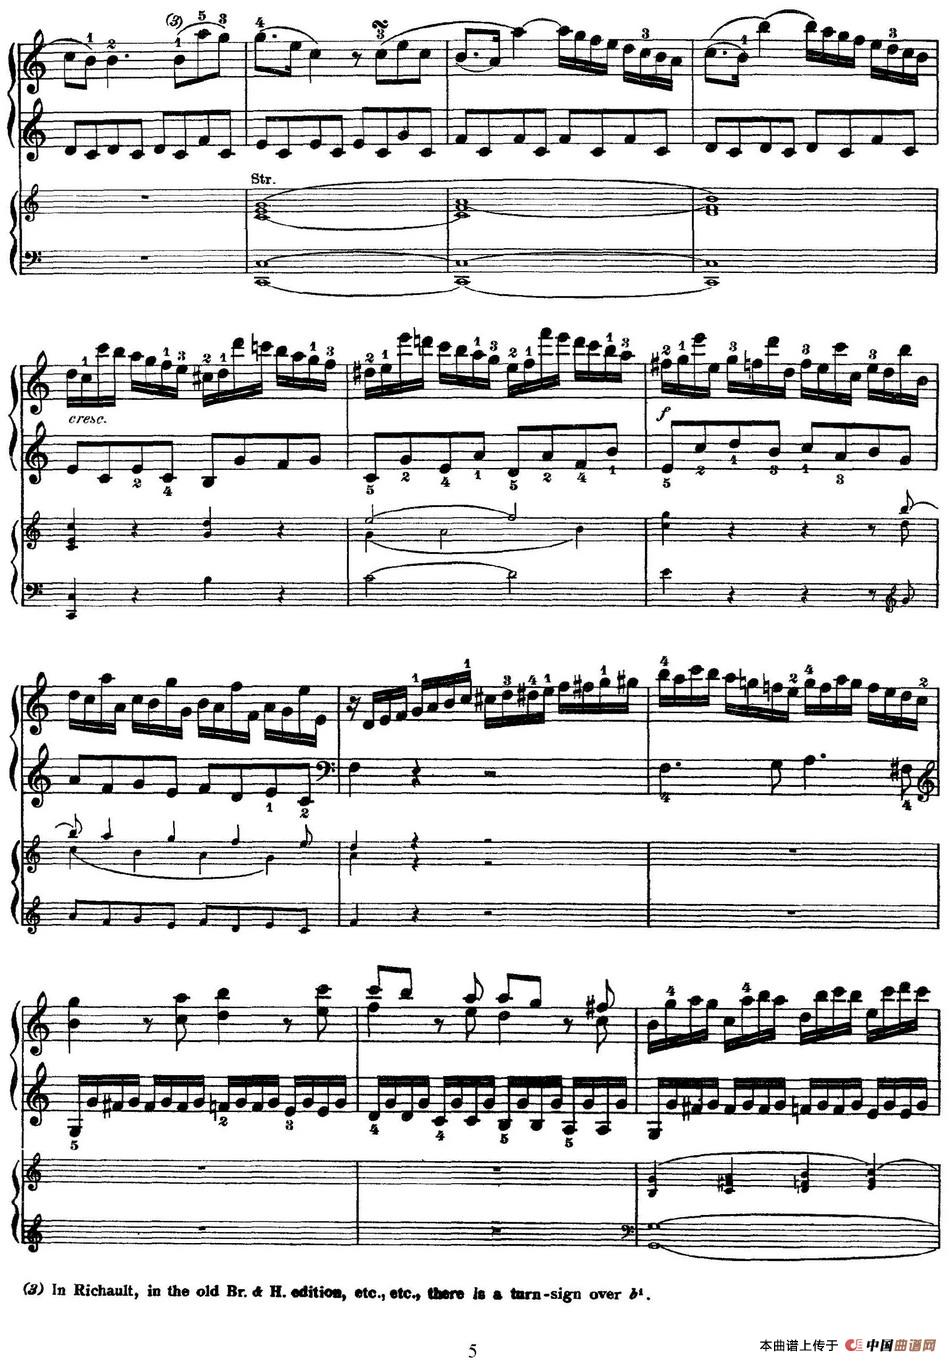 二十八部钢琴协奏曲 No.21（P1-15）